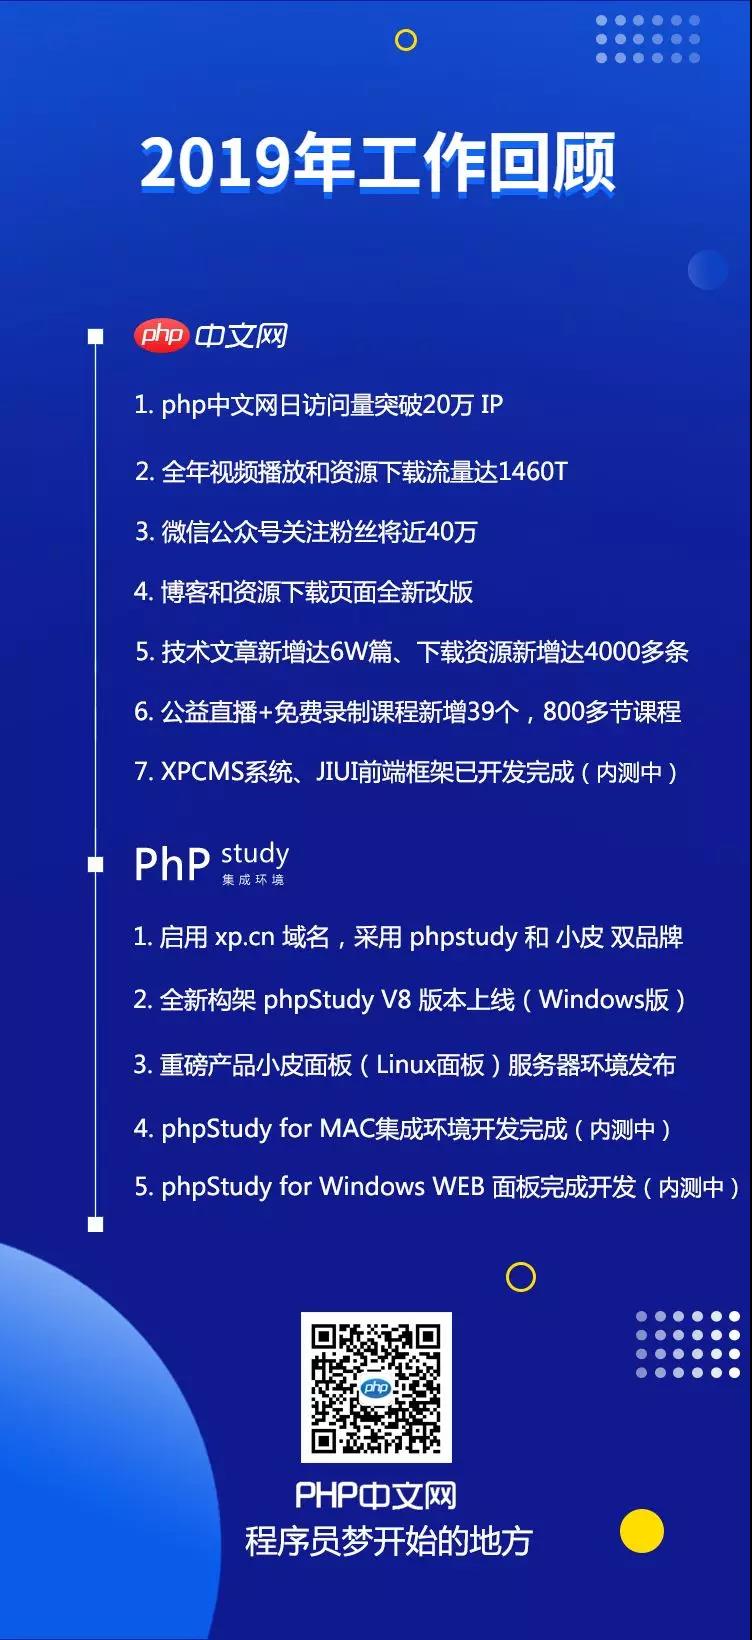 php中文网一份年终汇报